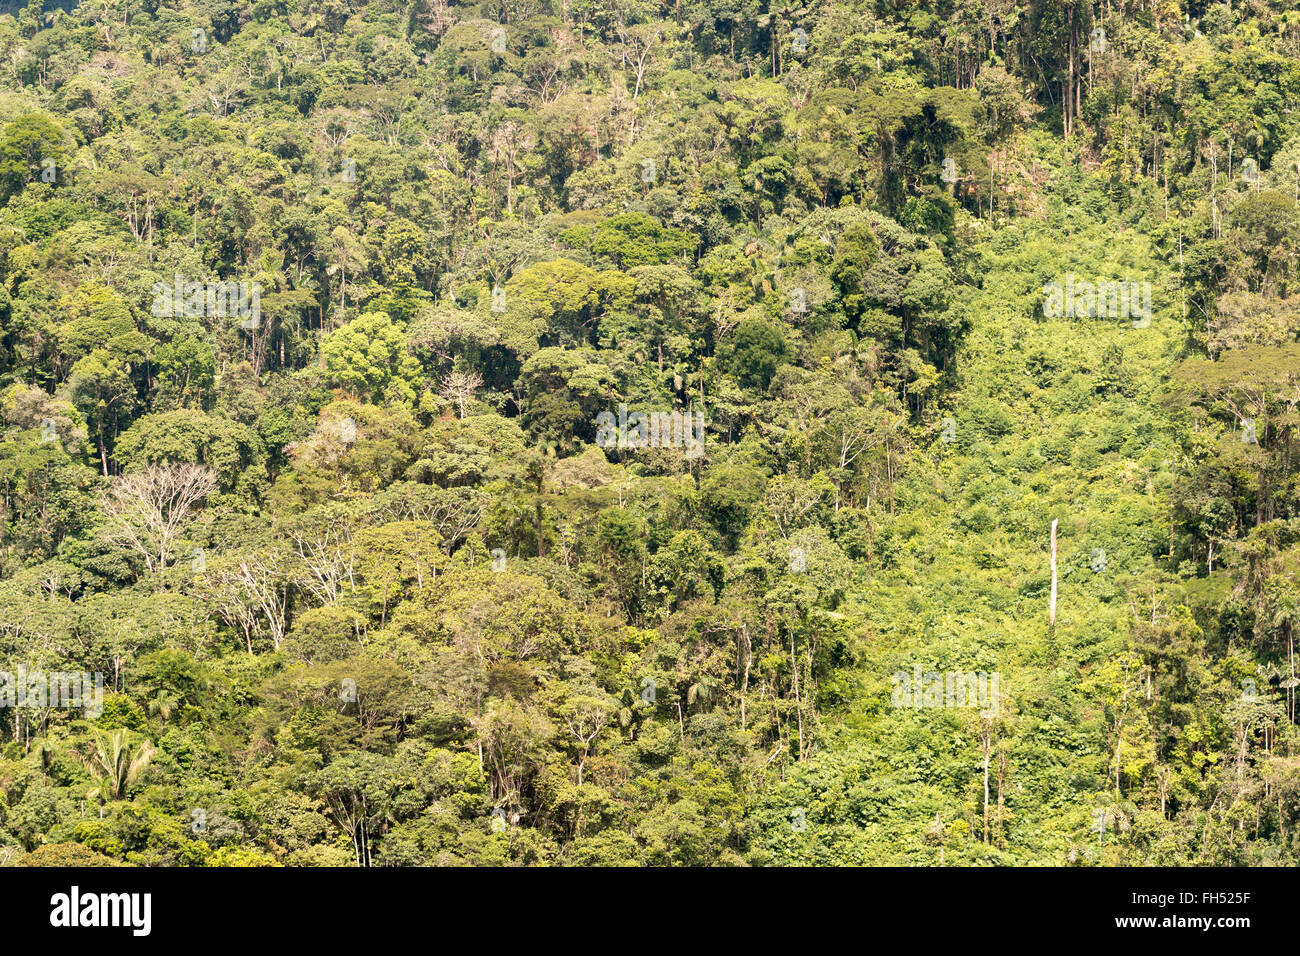 Foresta pluviale primaria nella provincia di Pastaza, Ecuador, con una striscia di rigenerazione secondaria sul sito di una vecchia frana Foto Stock